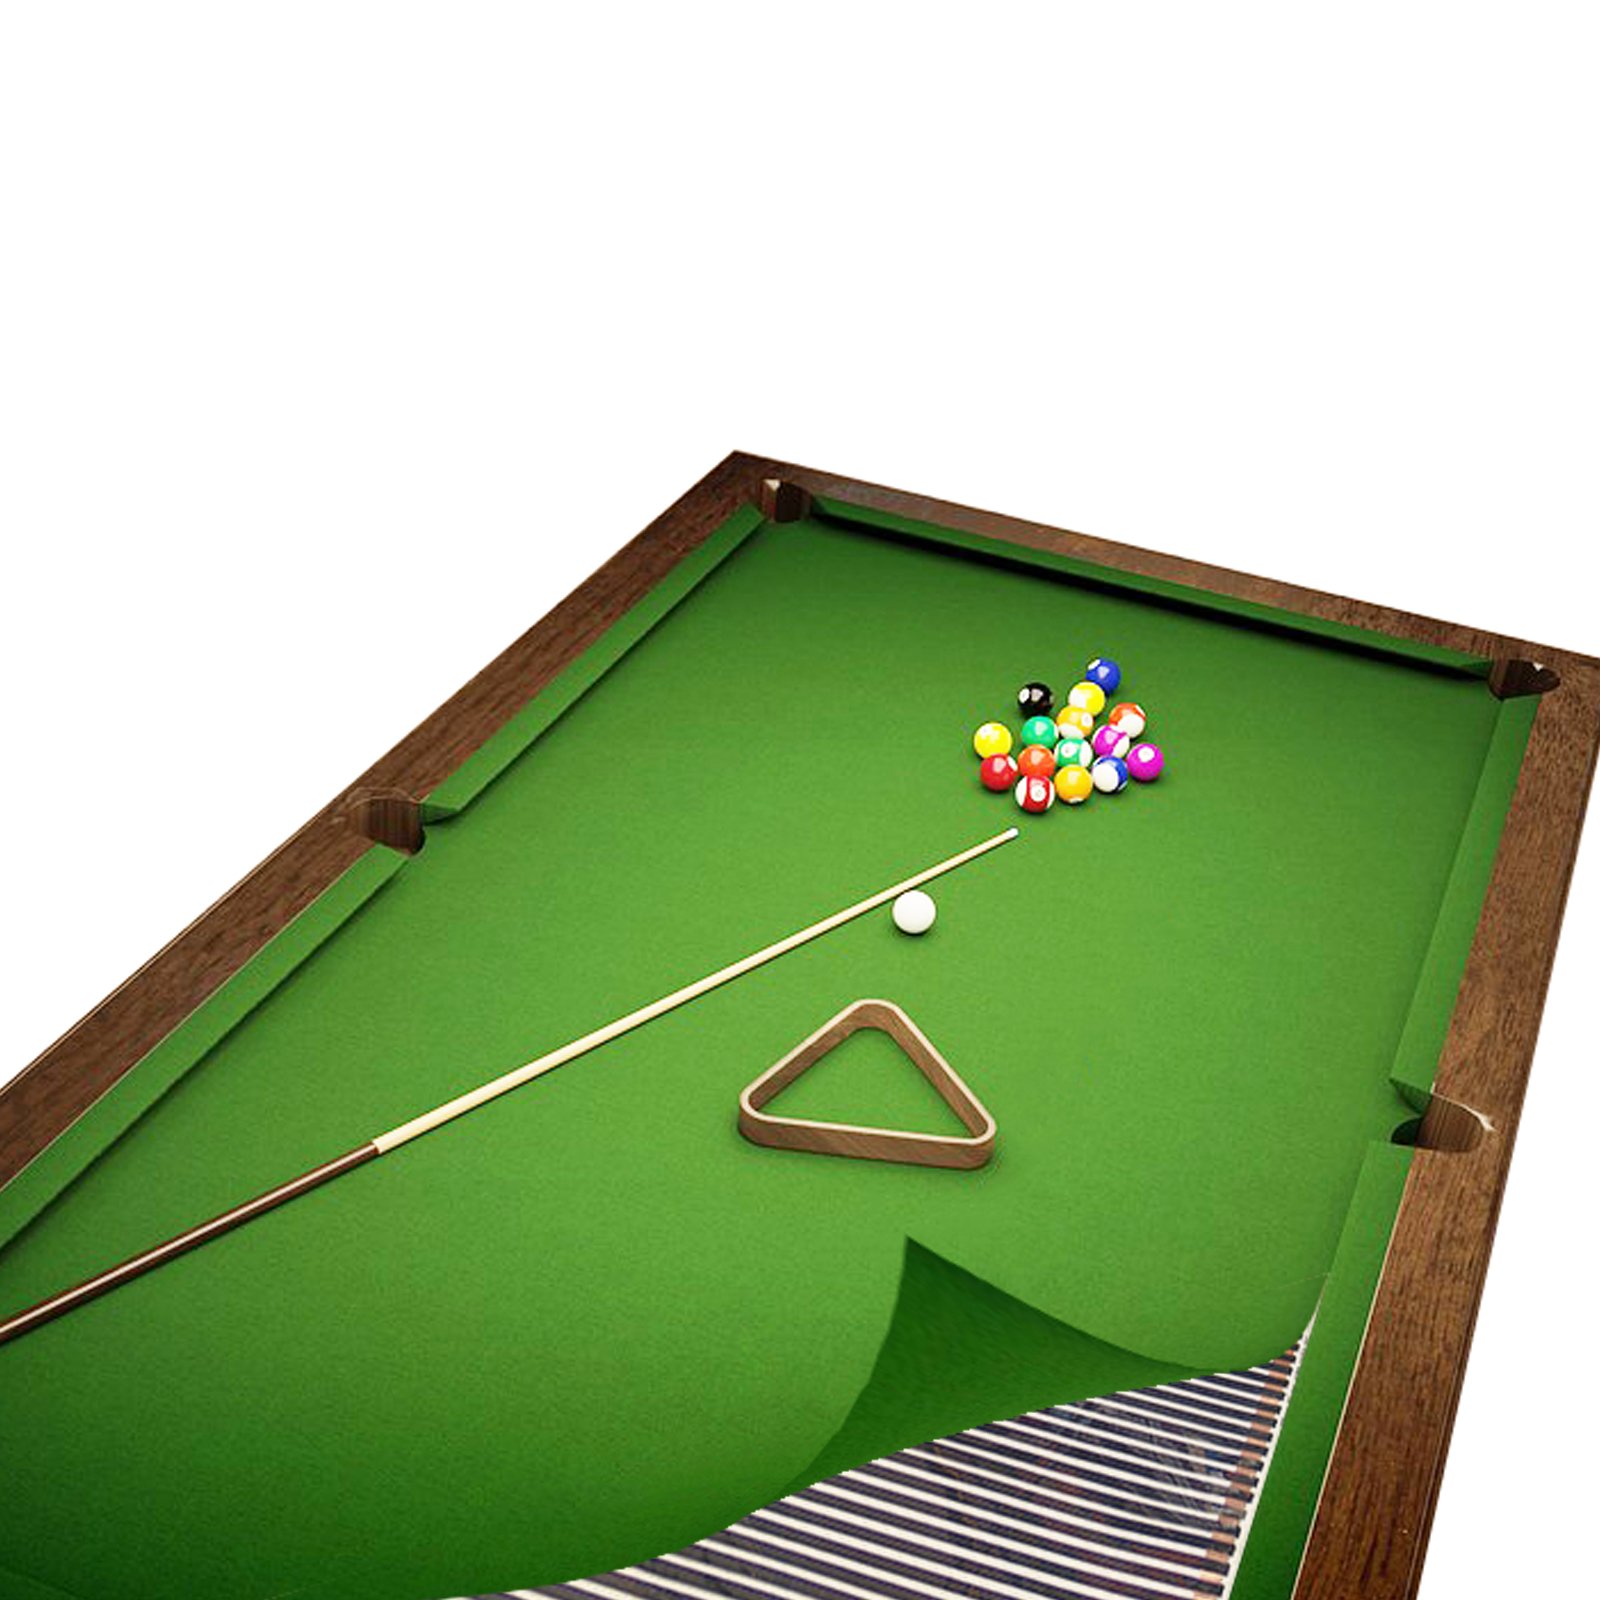 Comfort 220W/m² Heizfolie zur Billiardtisch Beheizung